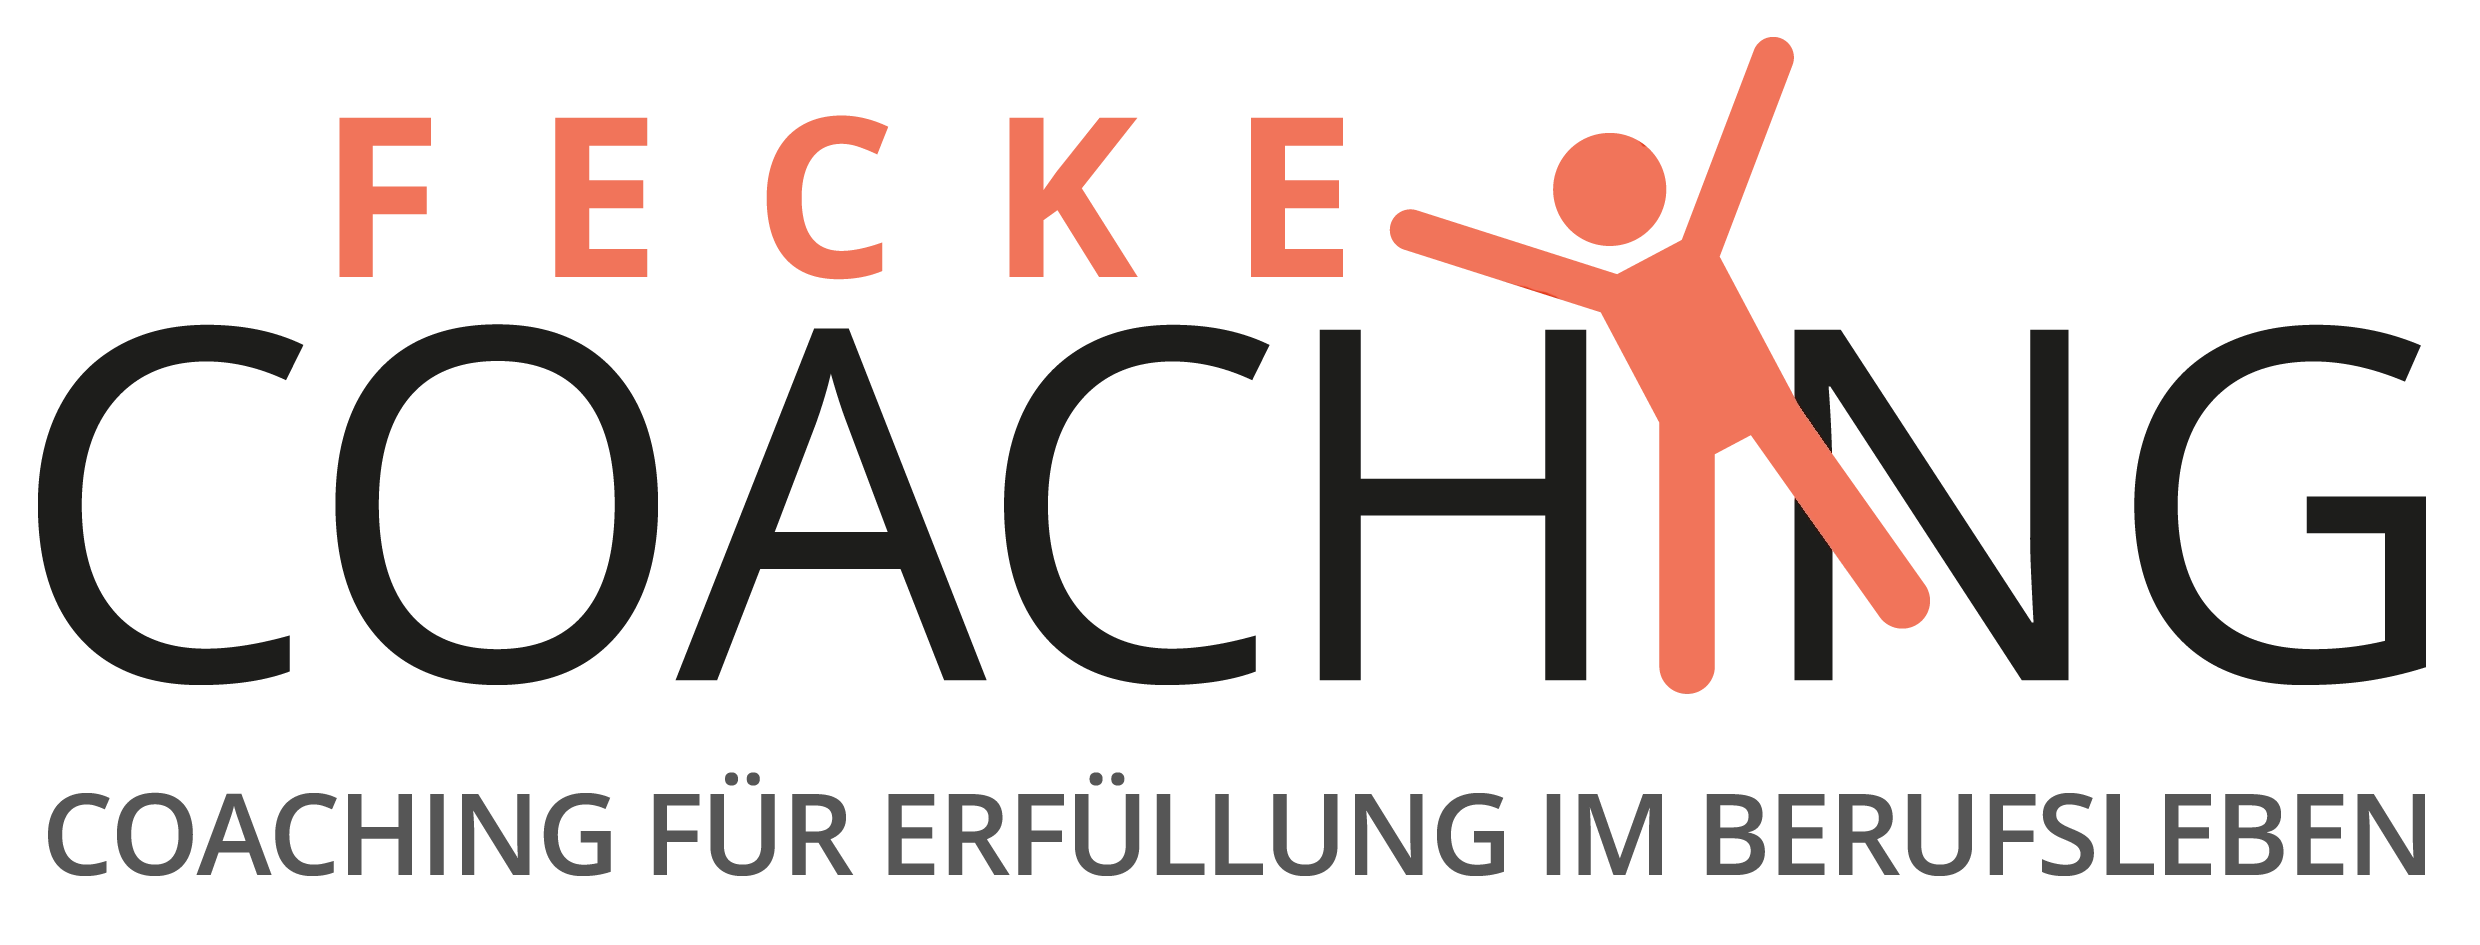 (c) Fecke-coaching.de